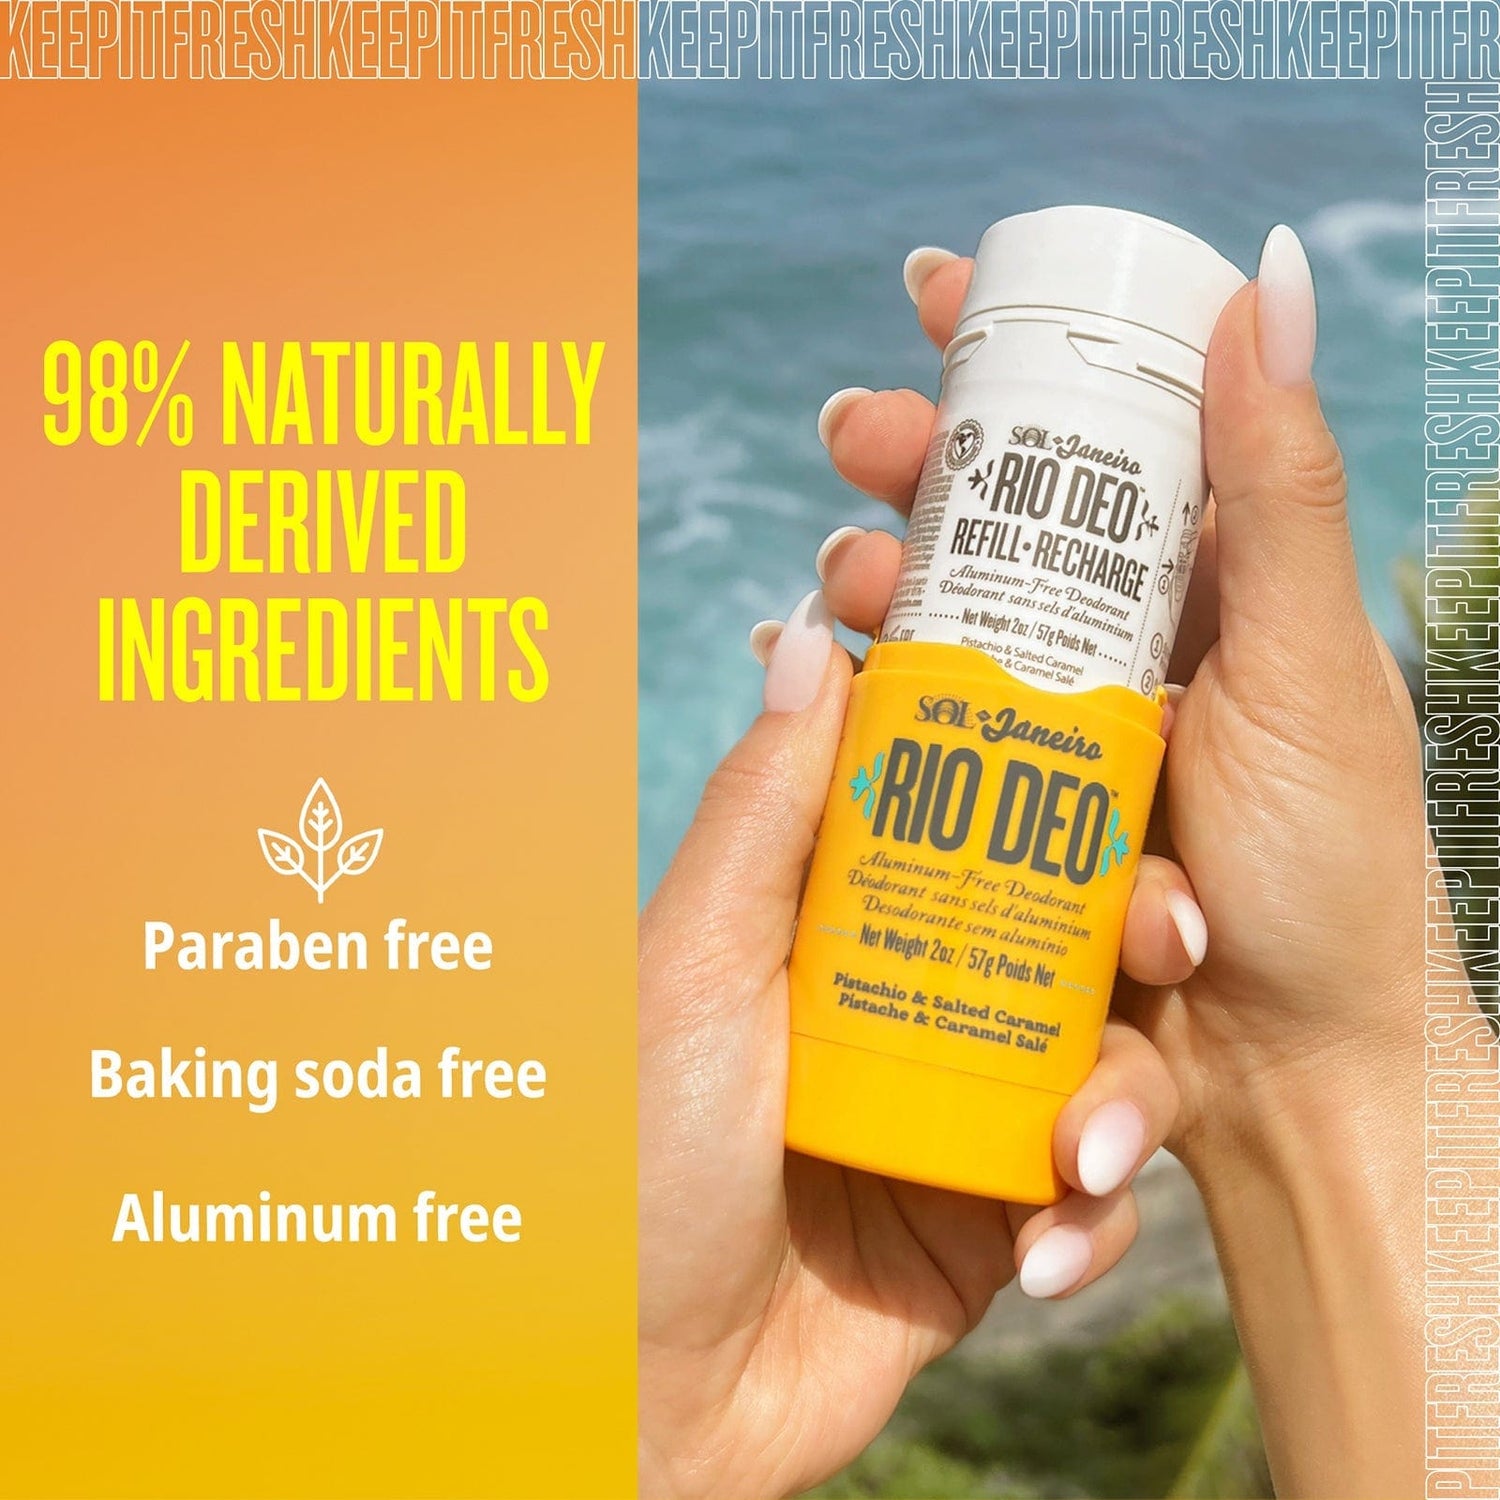 98% Naturally derived ingredients - paraben free - baking soda free - aluminum free | Keep It Fresh